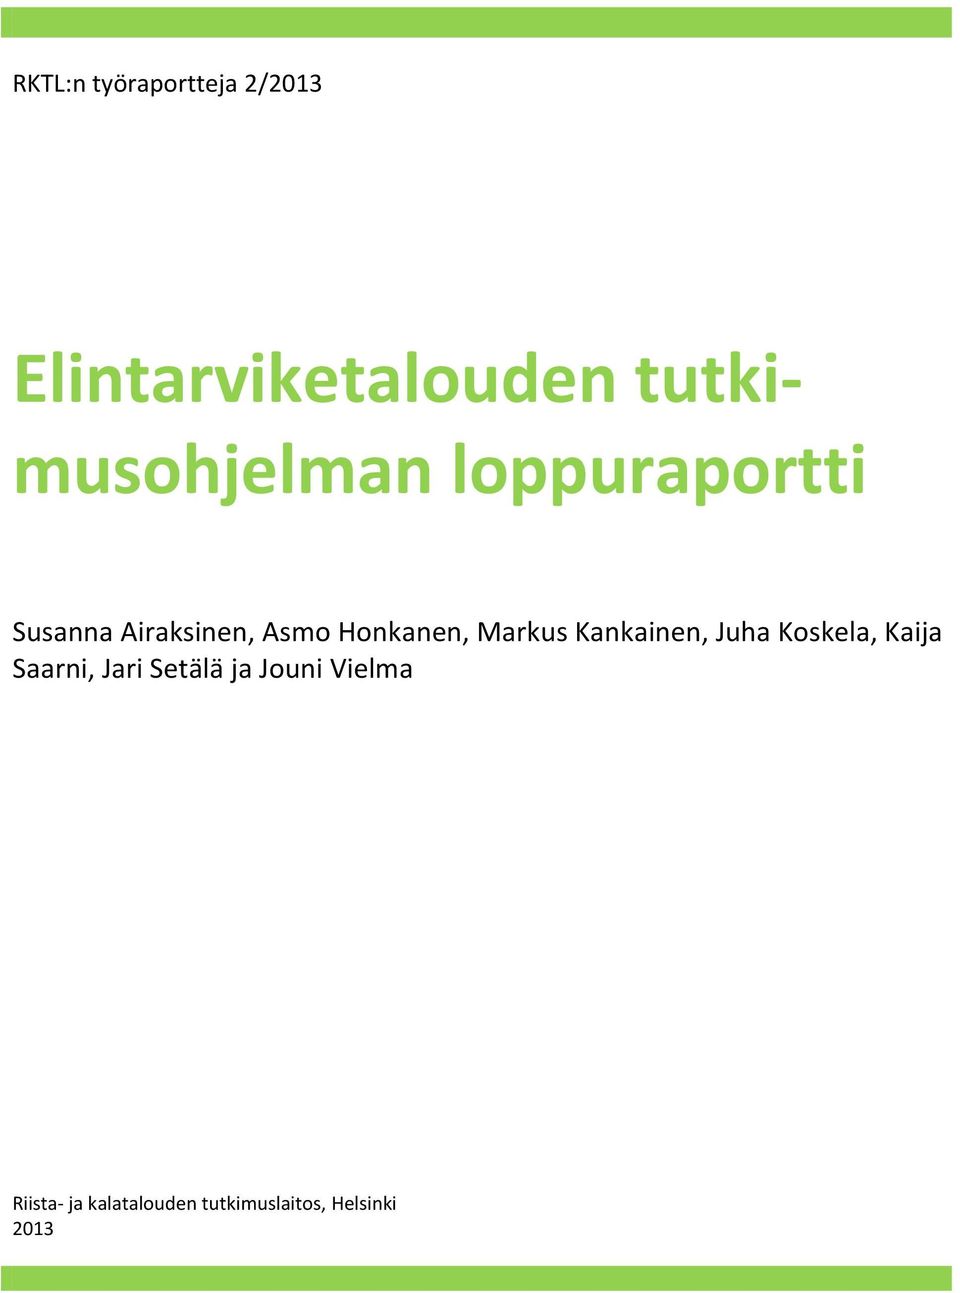 Juha Koskela, Kaija Saarni, Jari Setälä ja Jouni